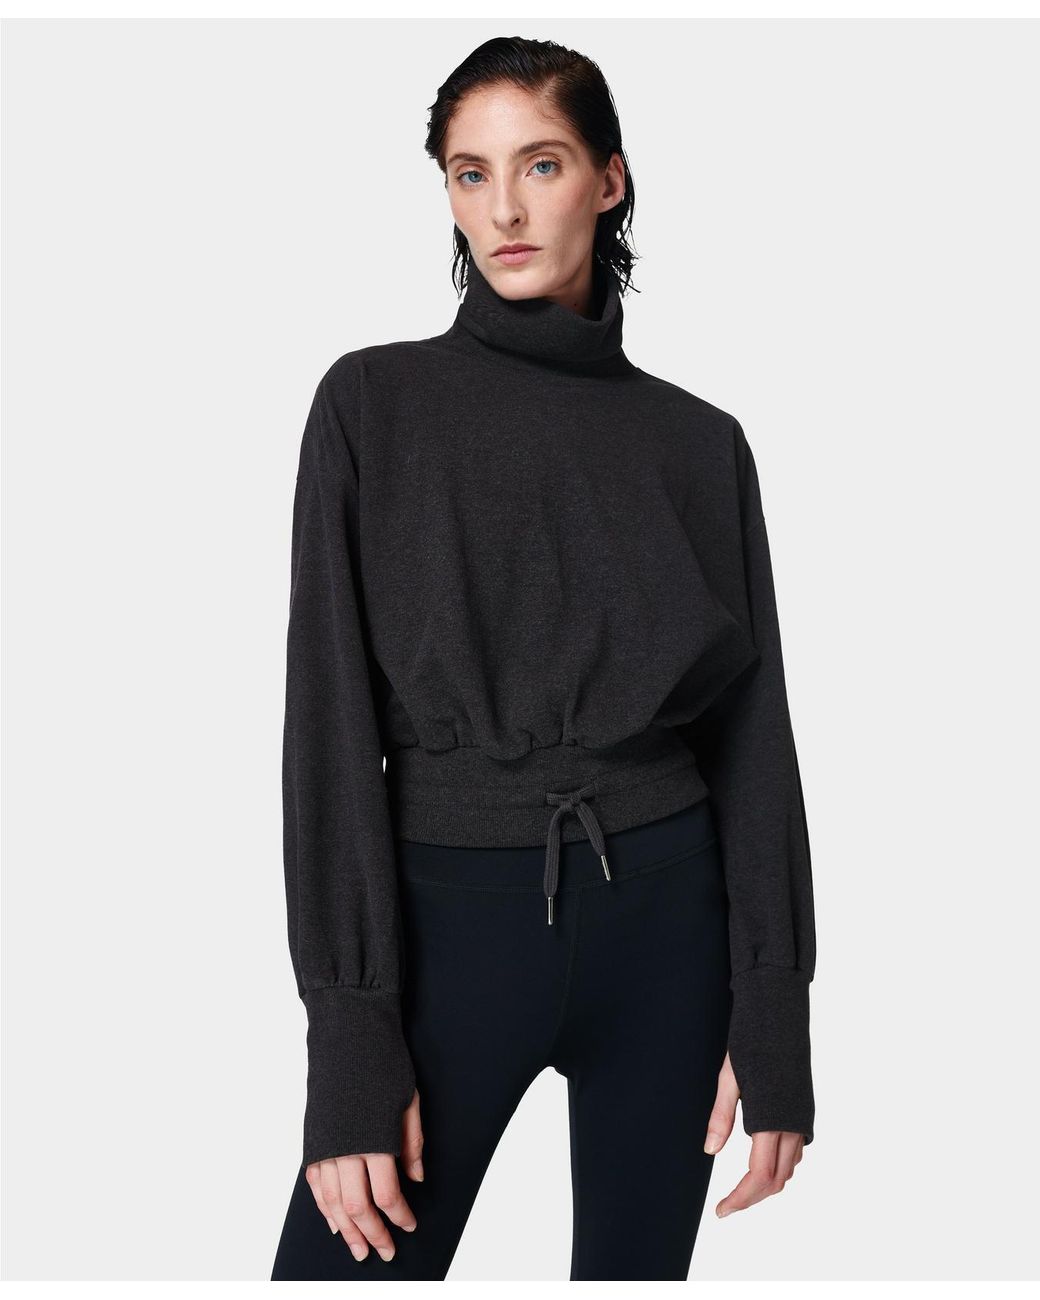 Sweaty Betty Melody Luxe Fleece Pullover in Black | Lyst